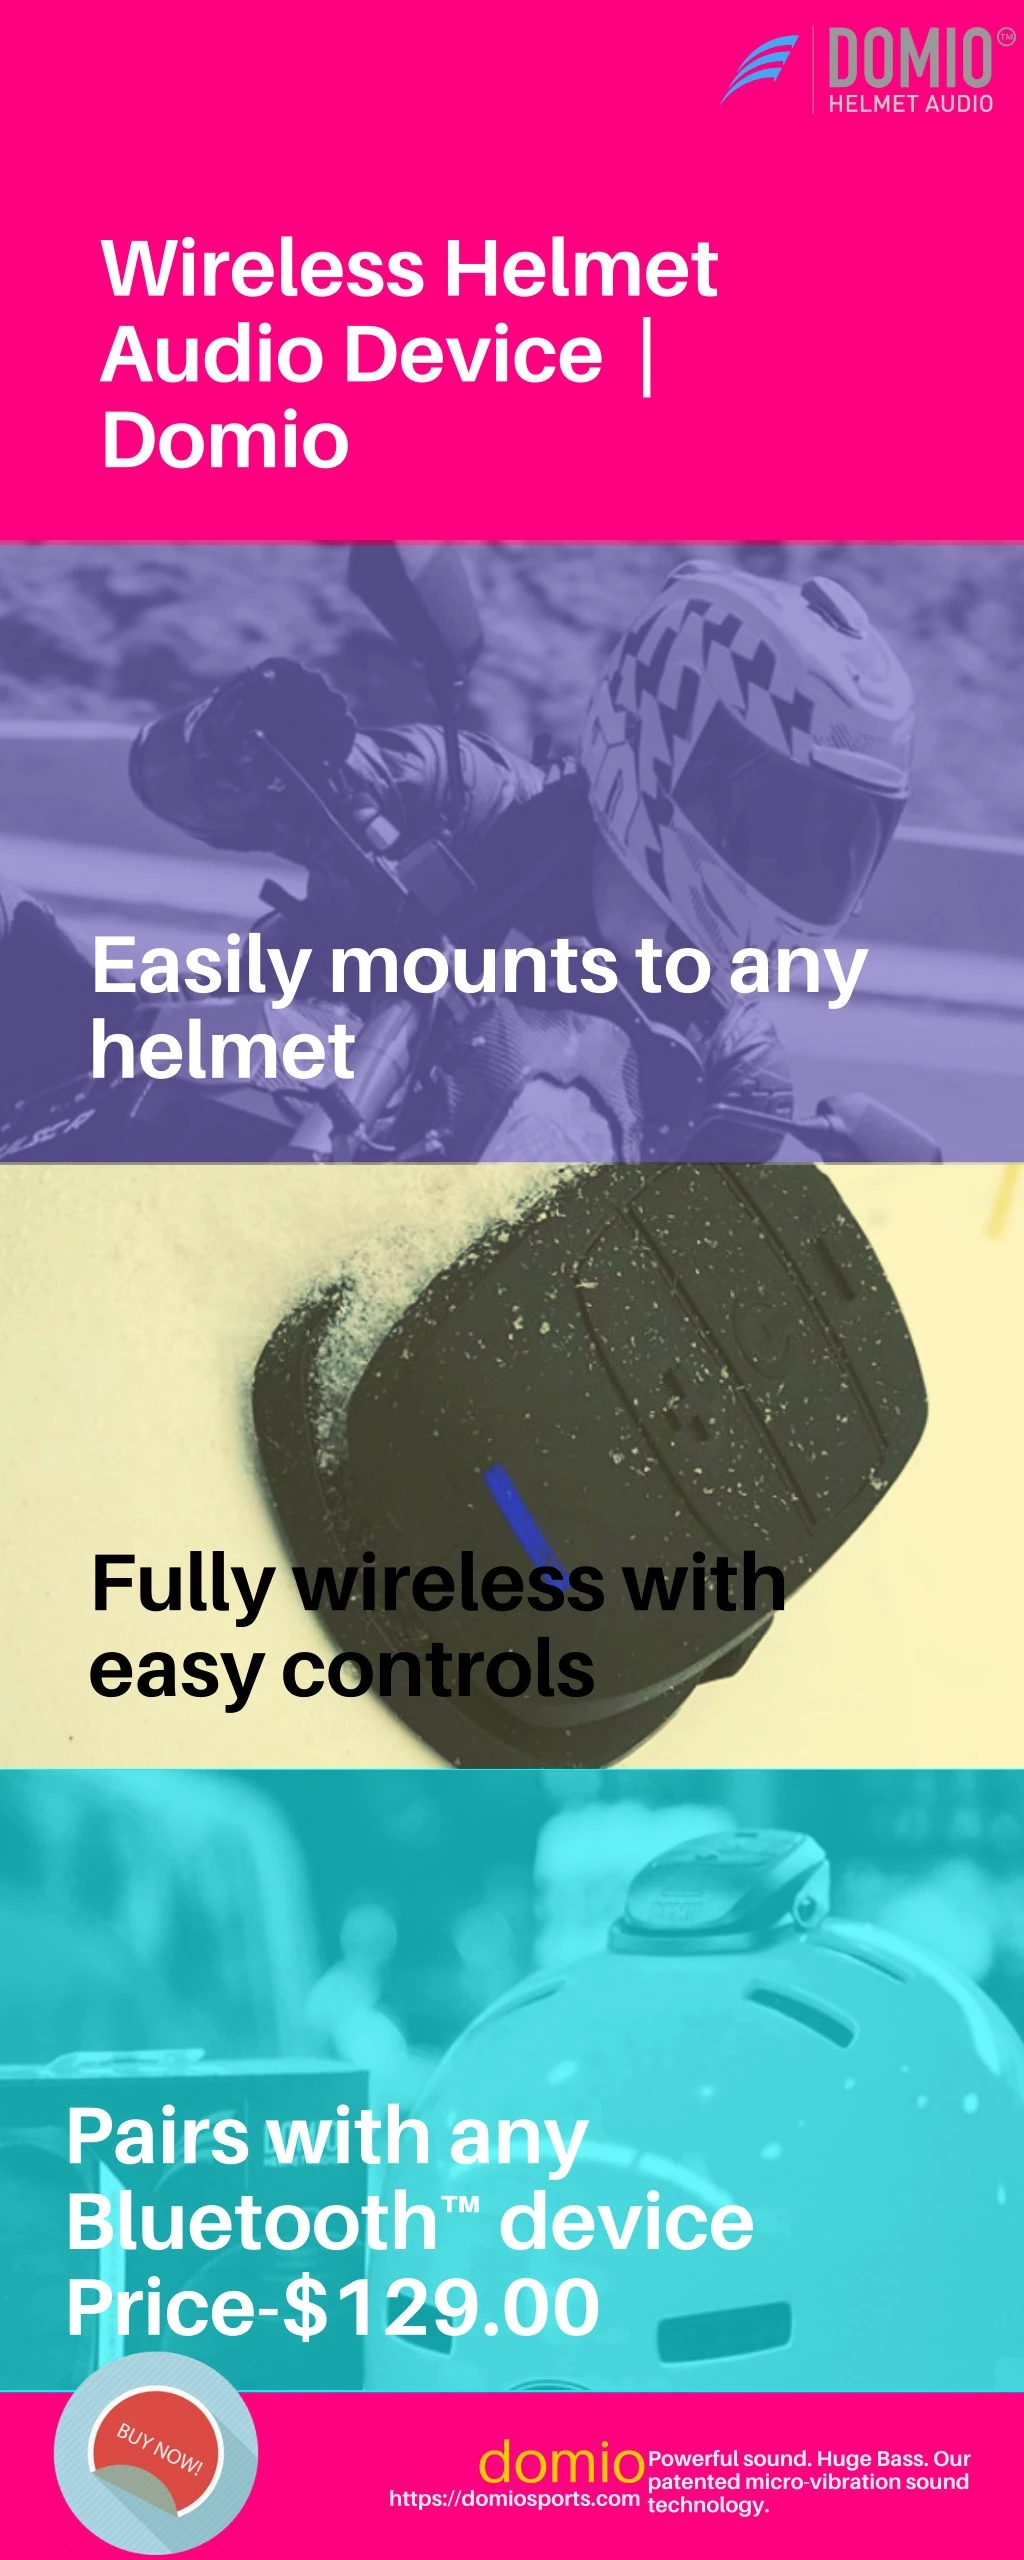 wireless helmet audio device domio